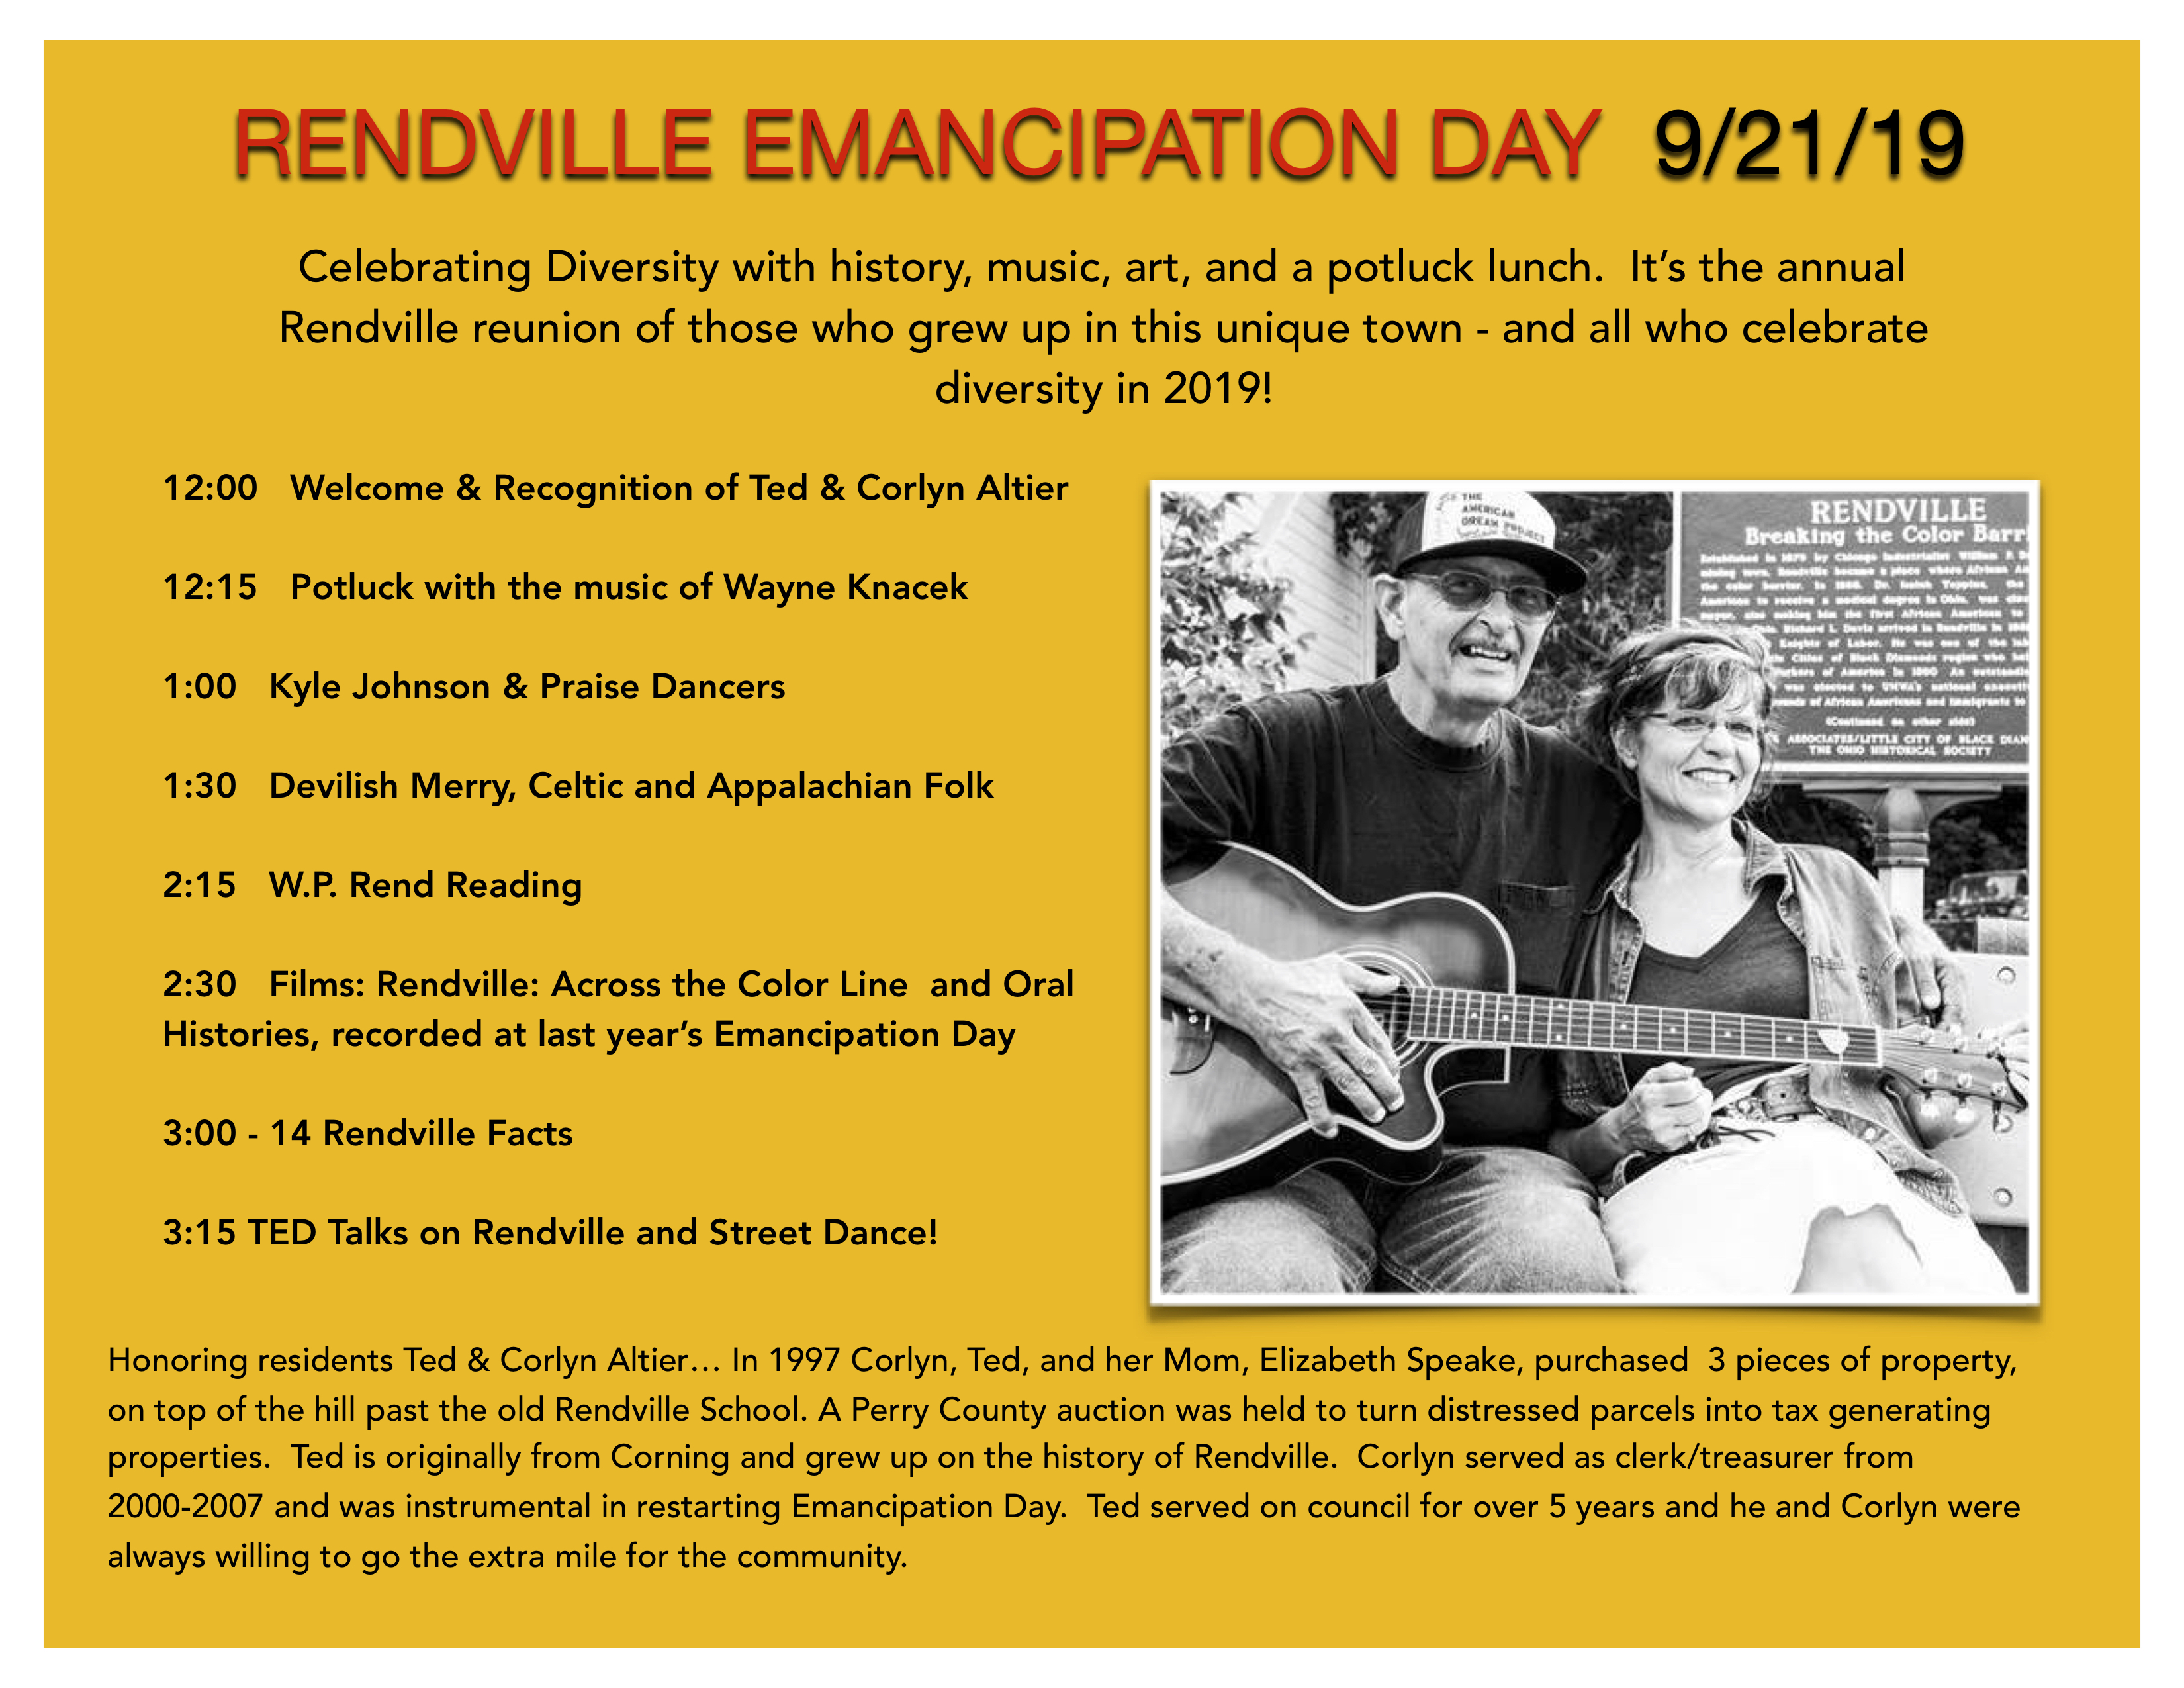 Rendville Emancipation Day flier